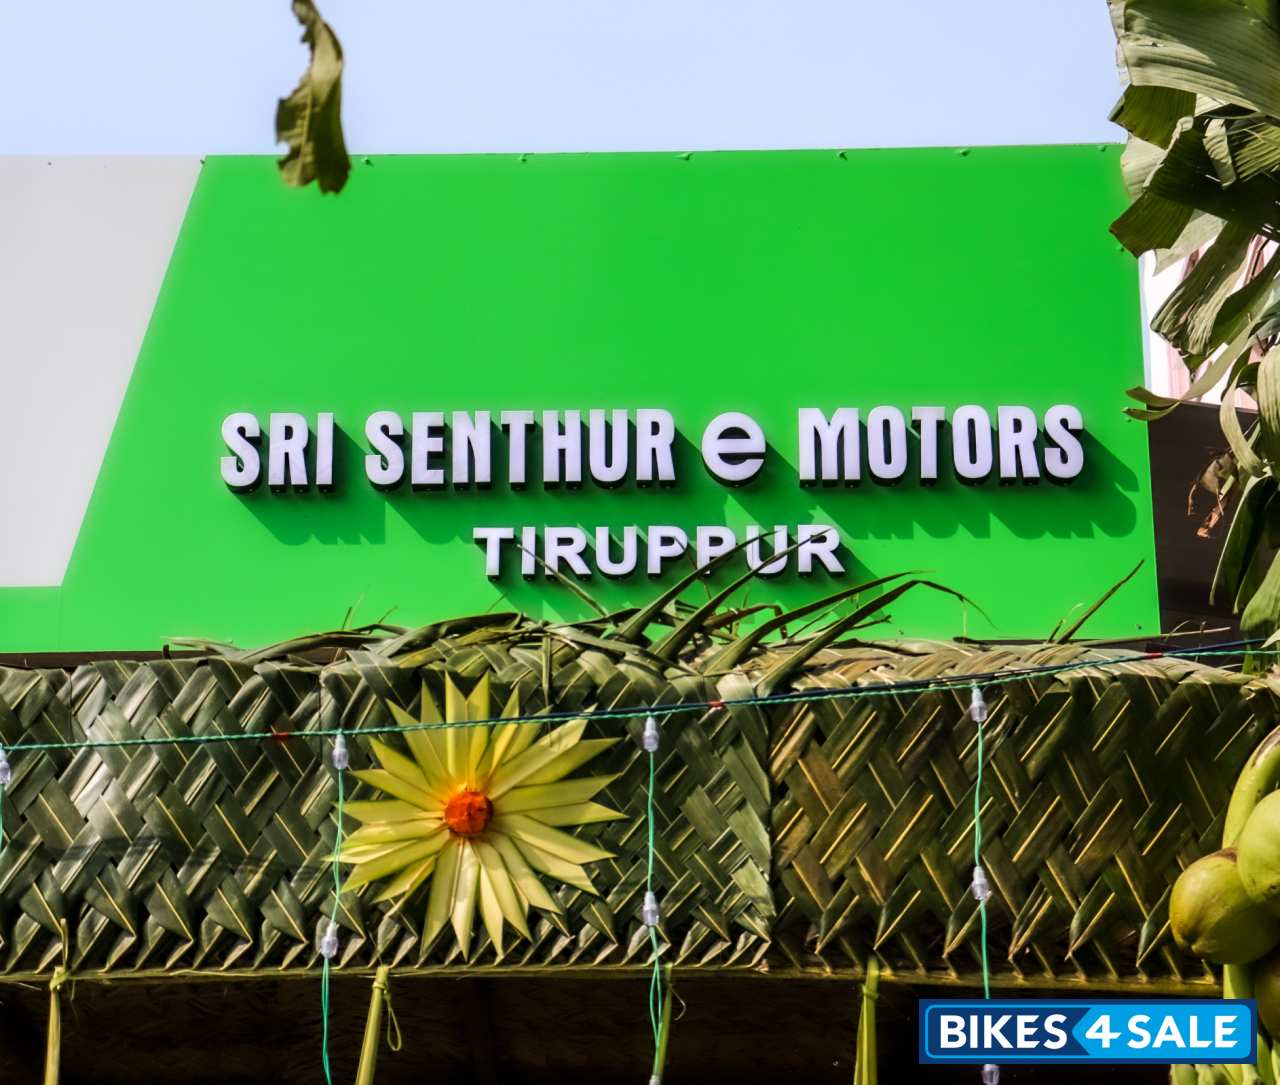 Sri Senthur E Motors